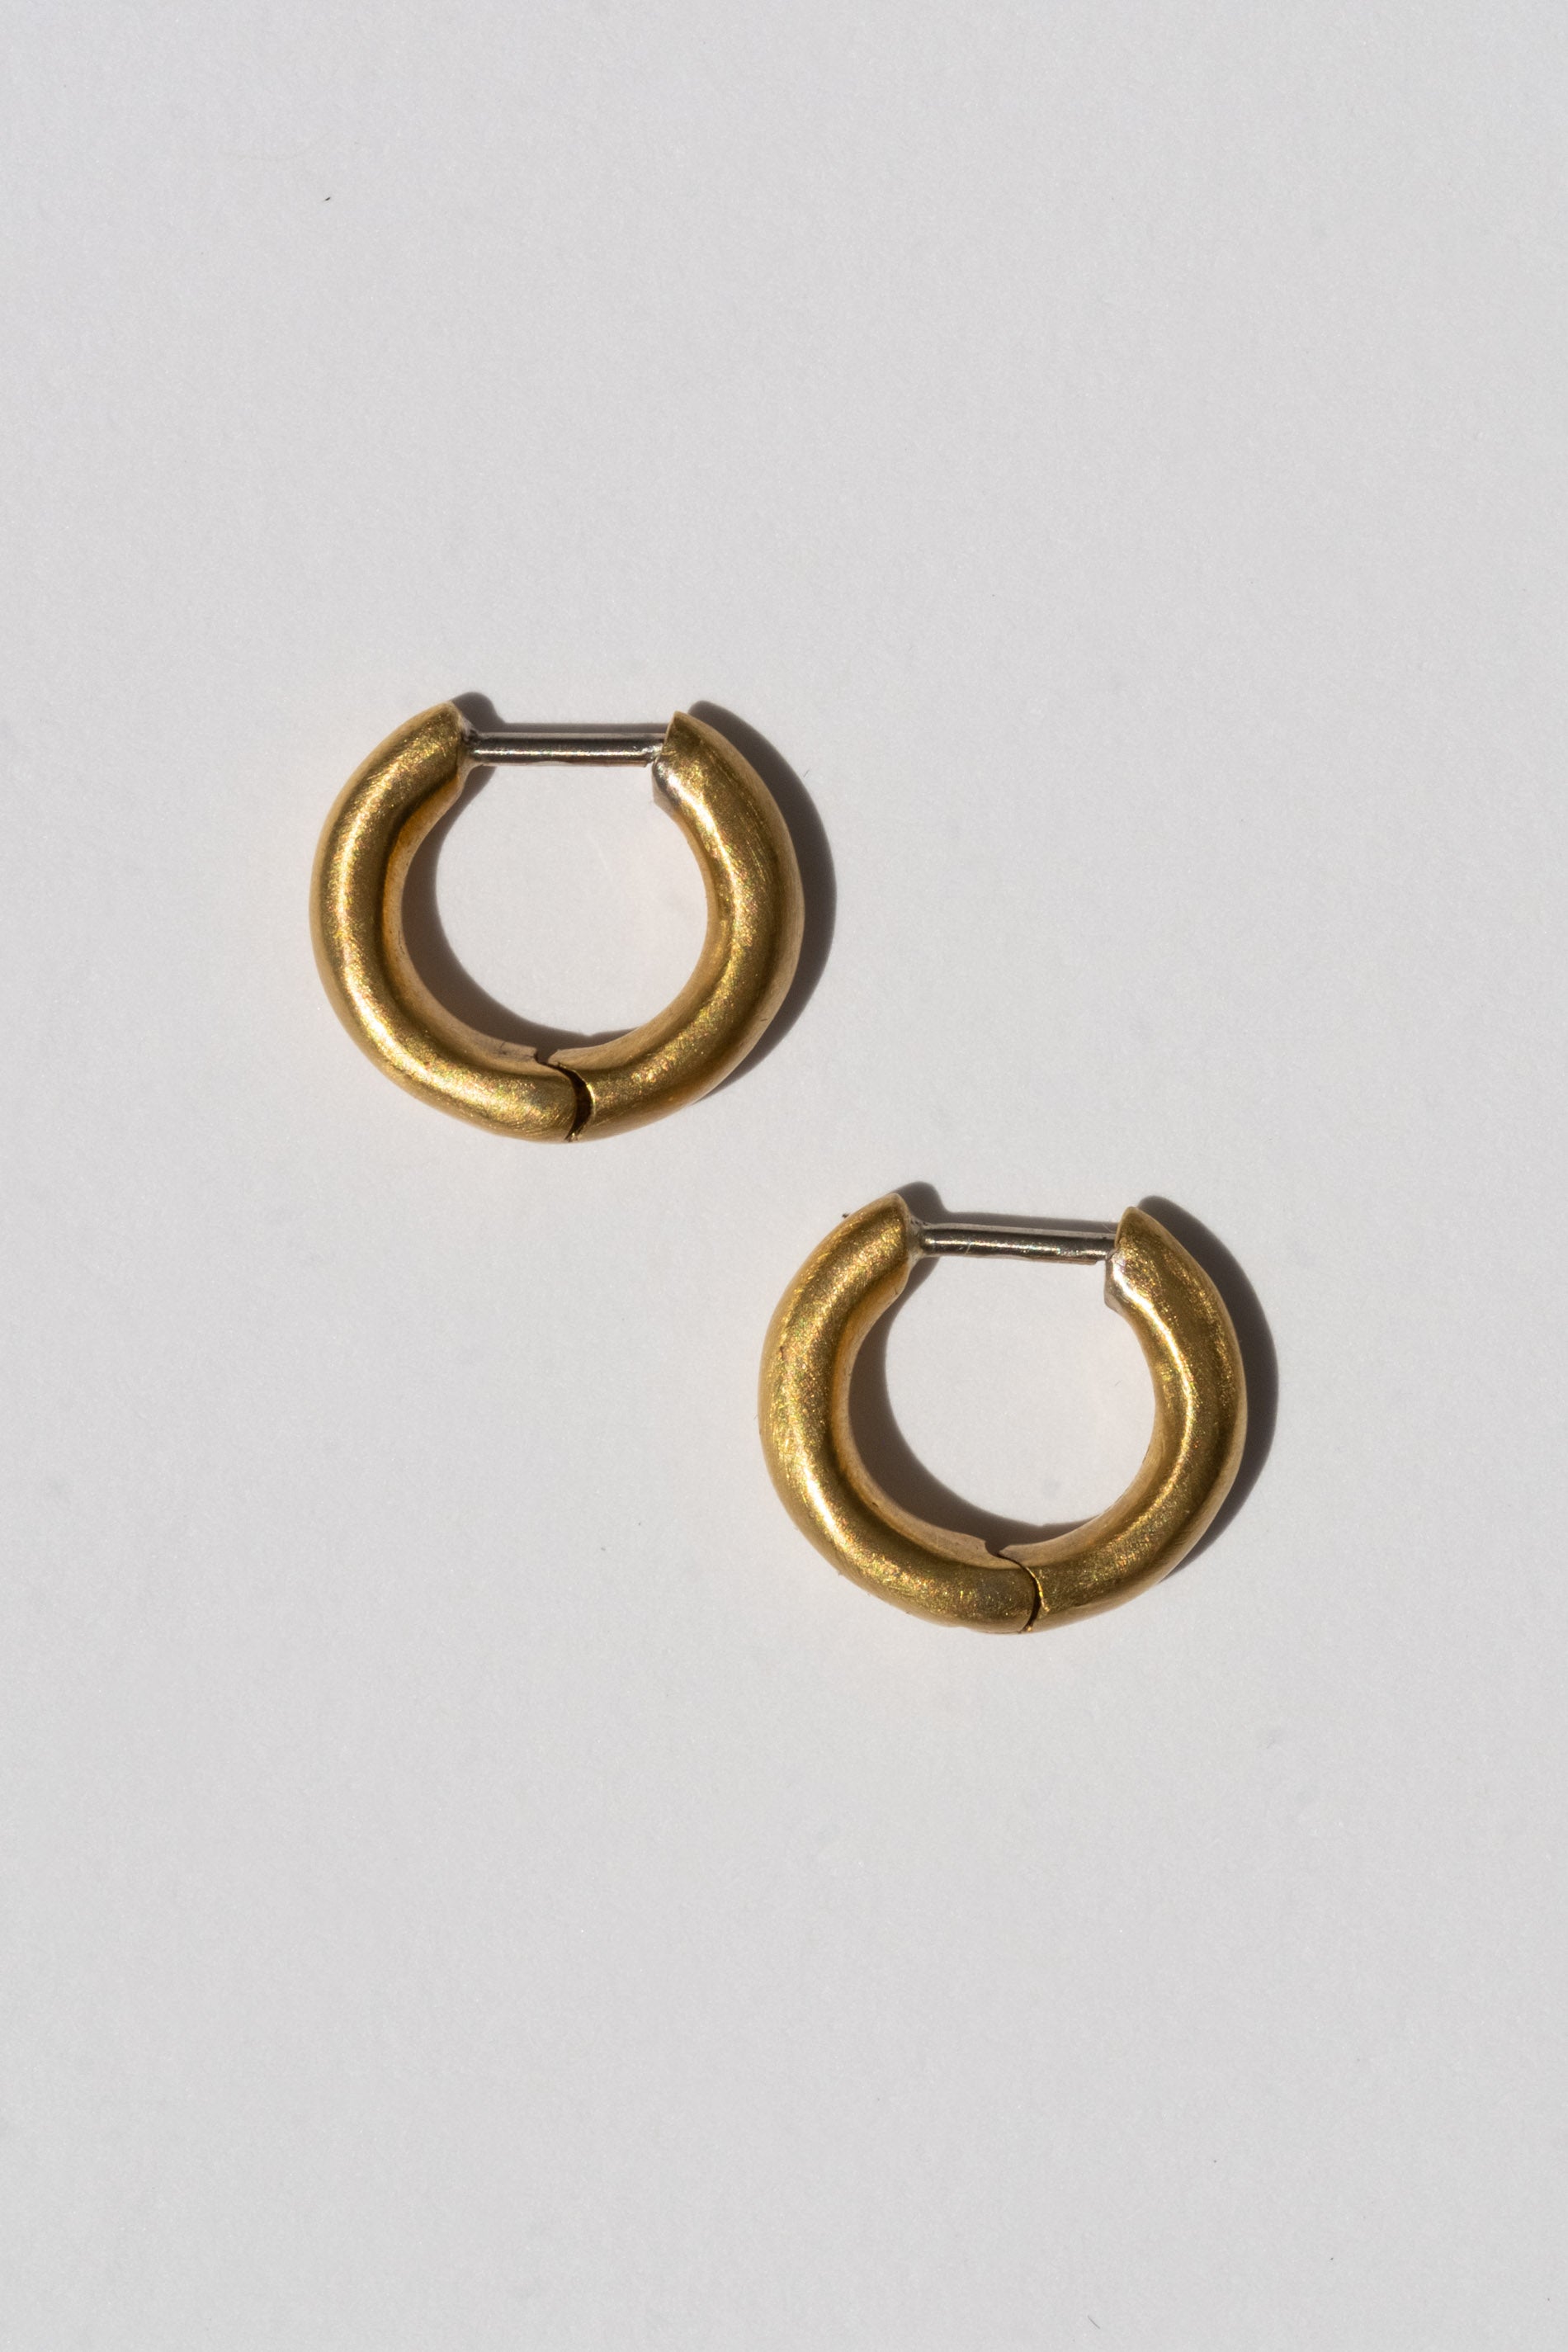 Esha 22KT Gold Hoop Earrings | Cute Ethnic Gold Earrings | CaratLane